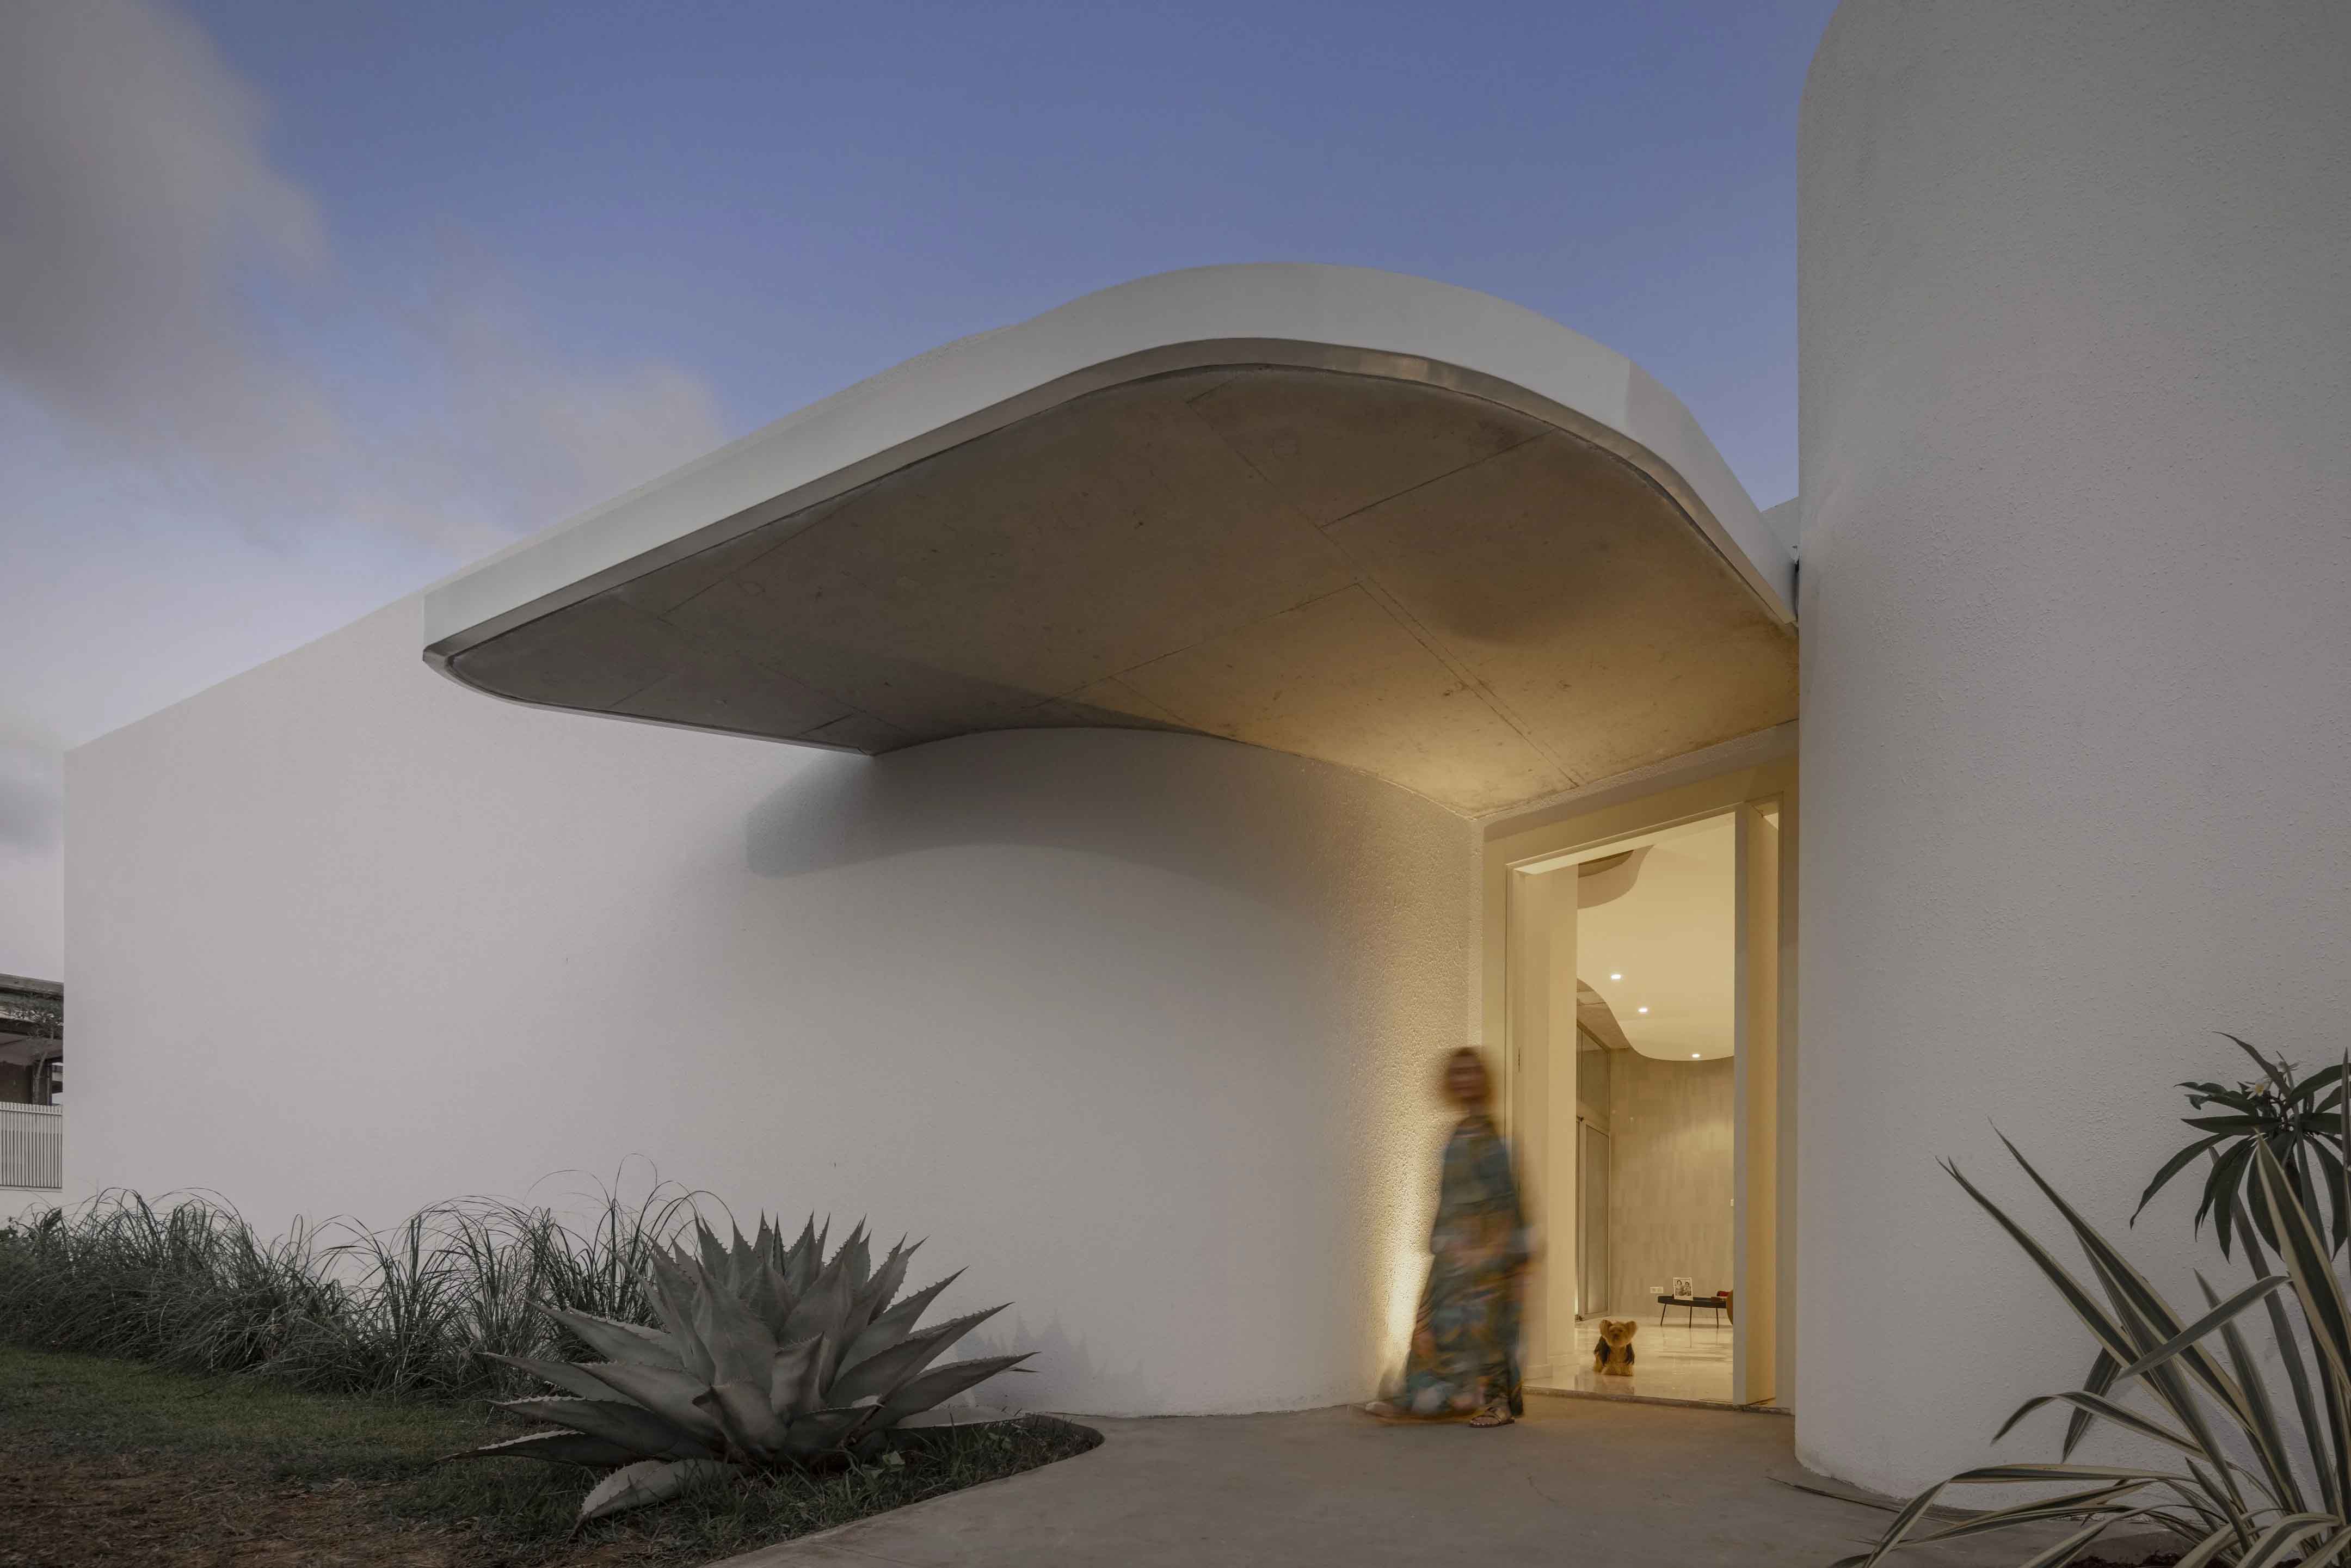 別墅設計,別墅設計案例,Siana Architecte,摩洛哥,國外別墅設計案例,別墅裝修,1000㎡,混凝土,曲線美學